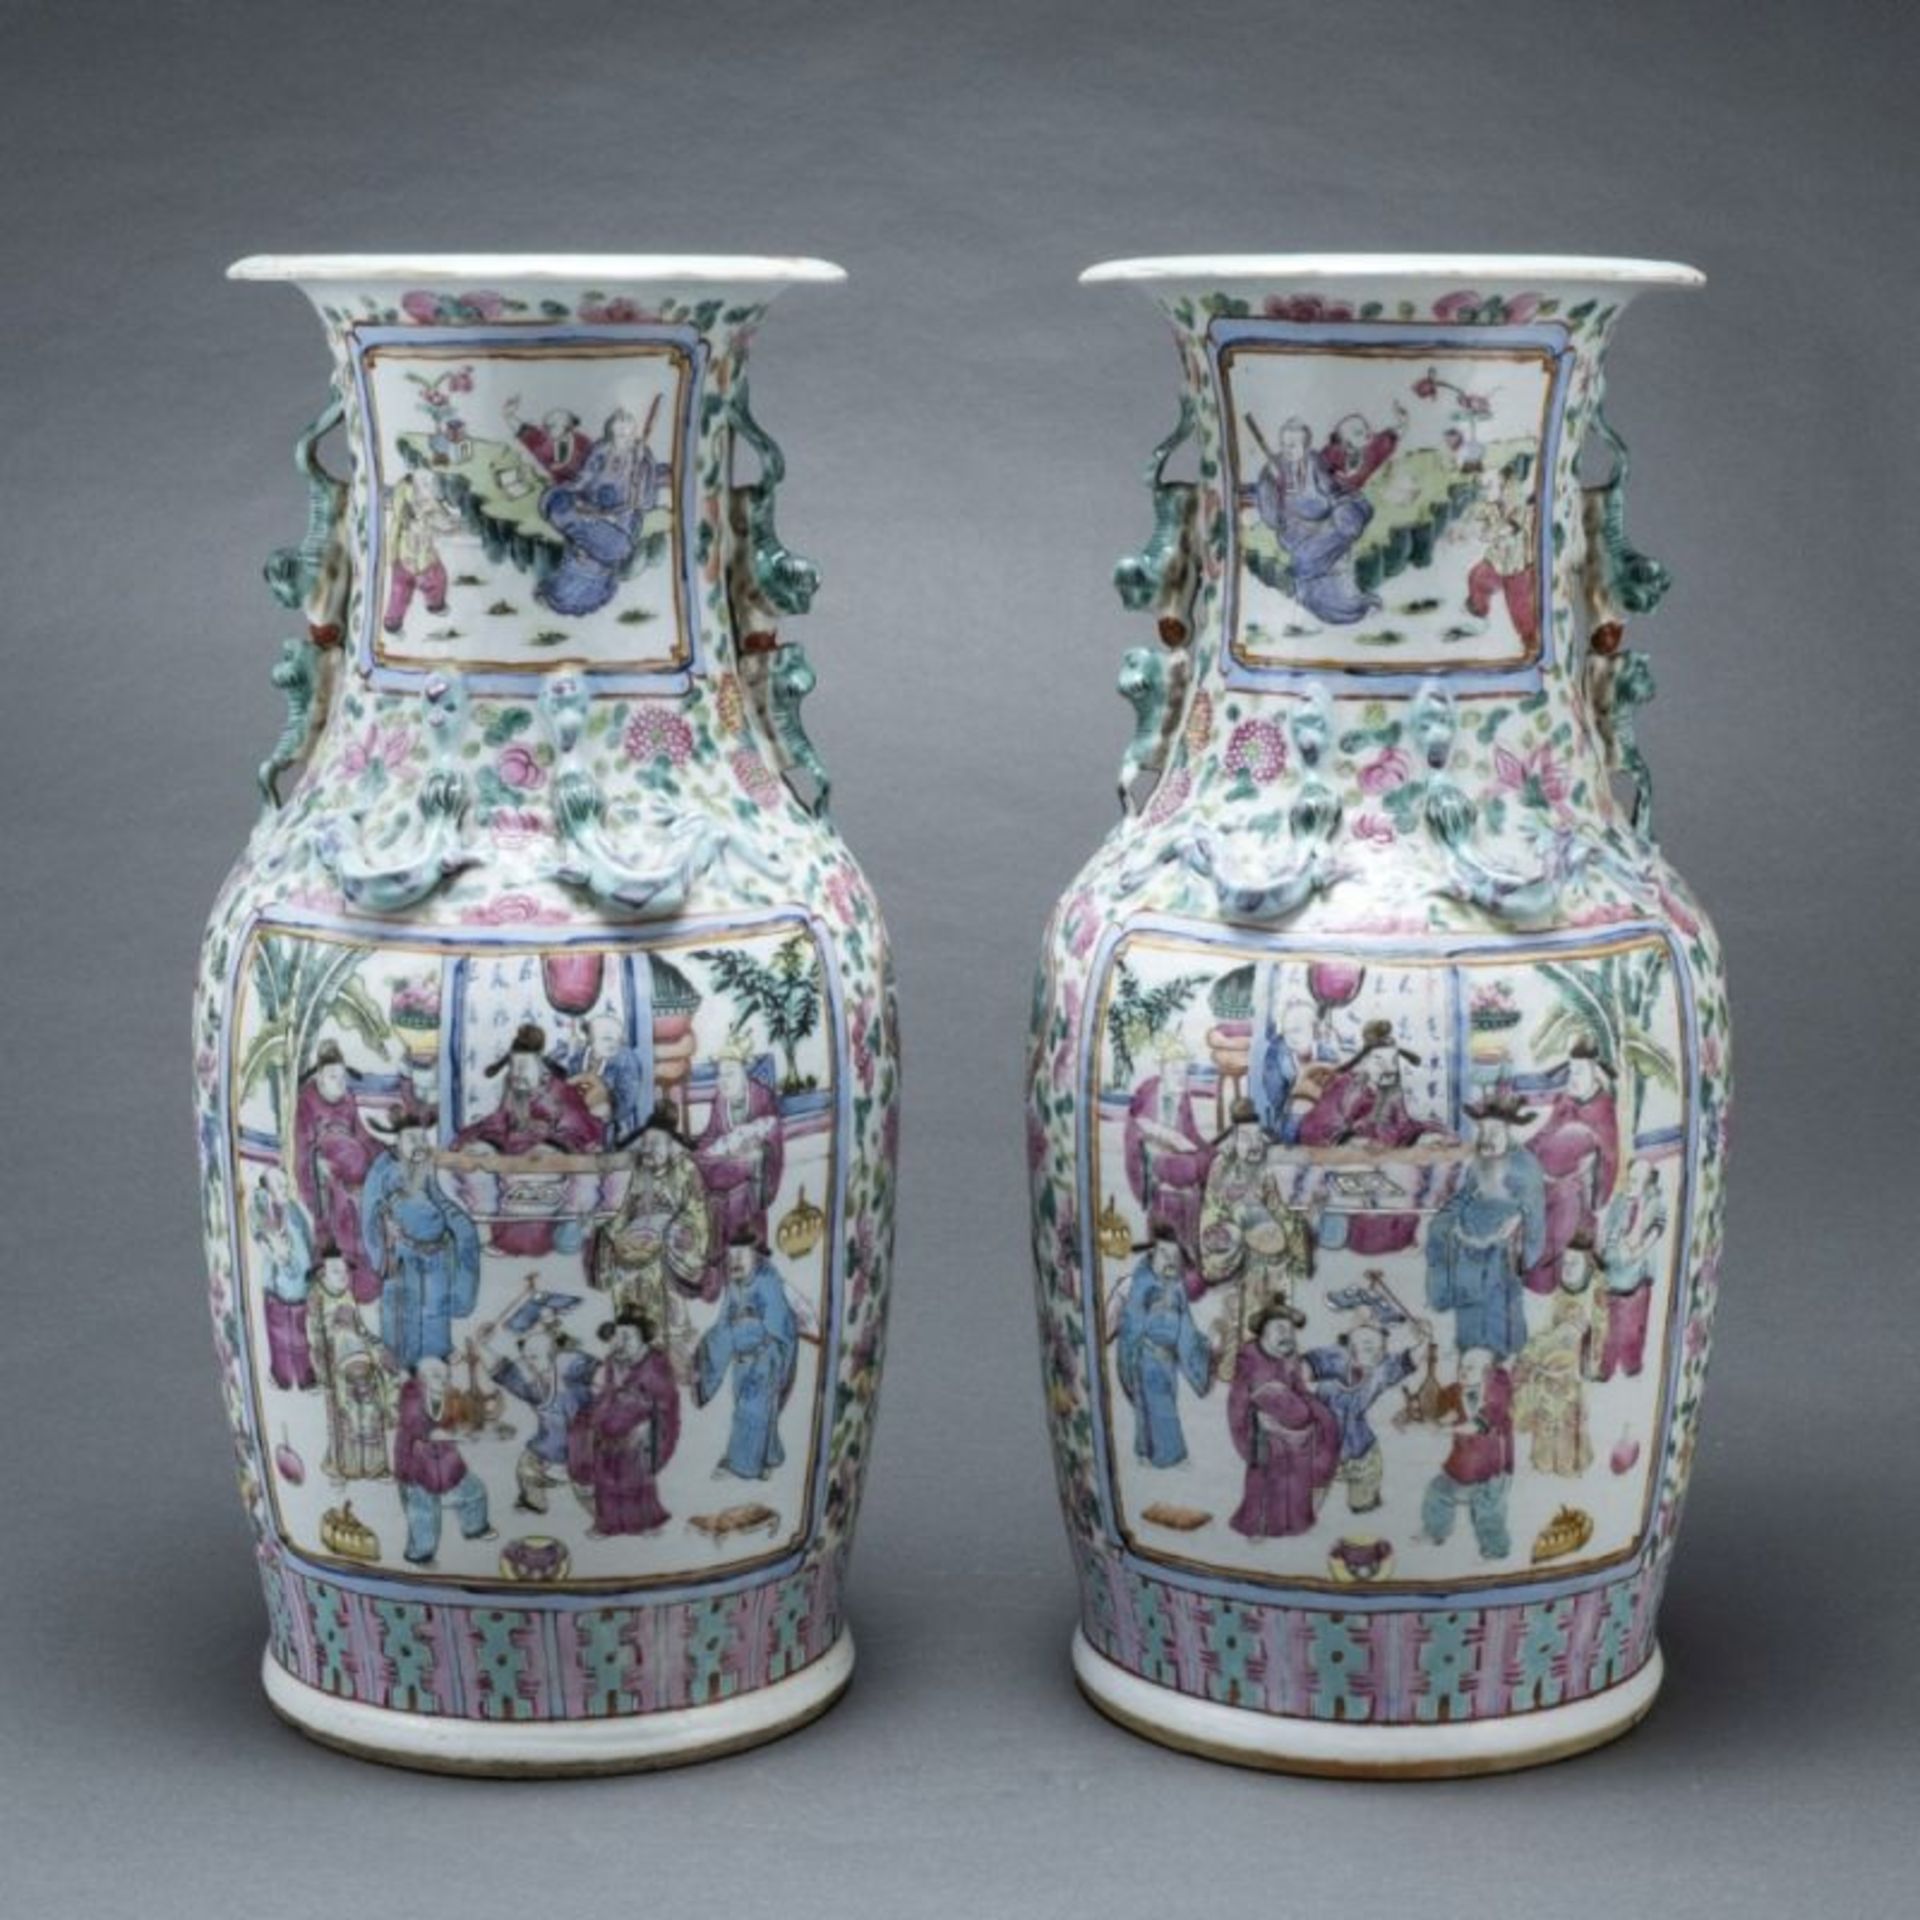 Paar Famille rose-Vasen, China, Qing-Dynastie, 19. Jahrhundert - Image 2 of 2